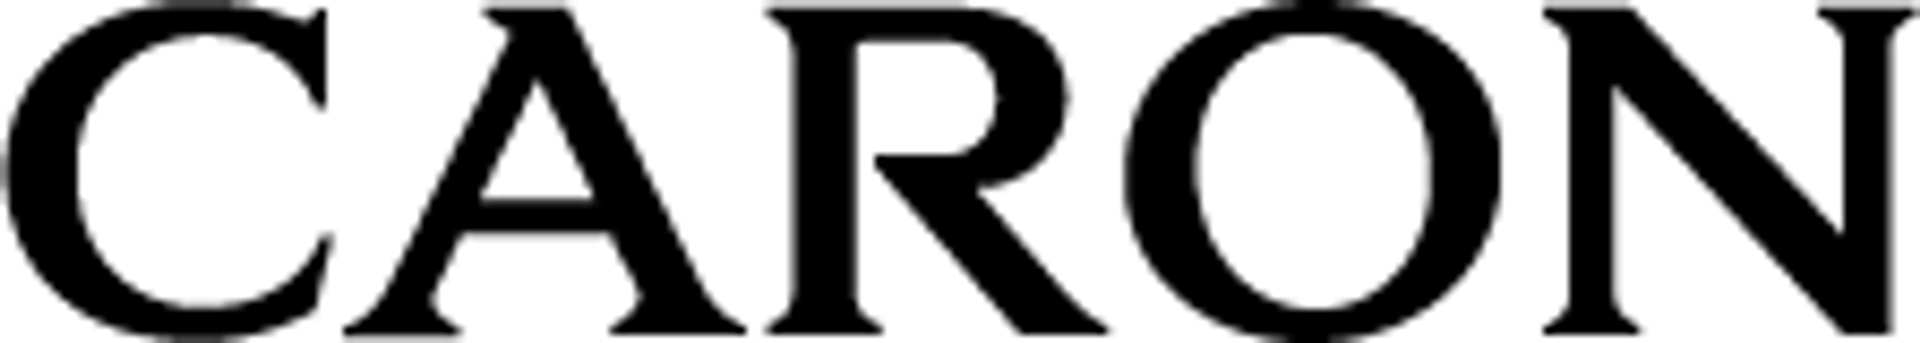 CARON logo de circulaire